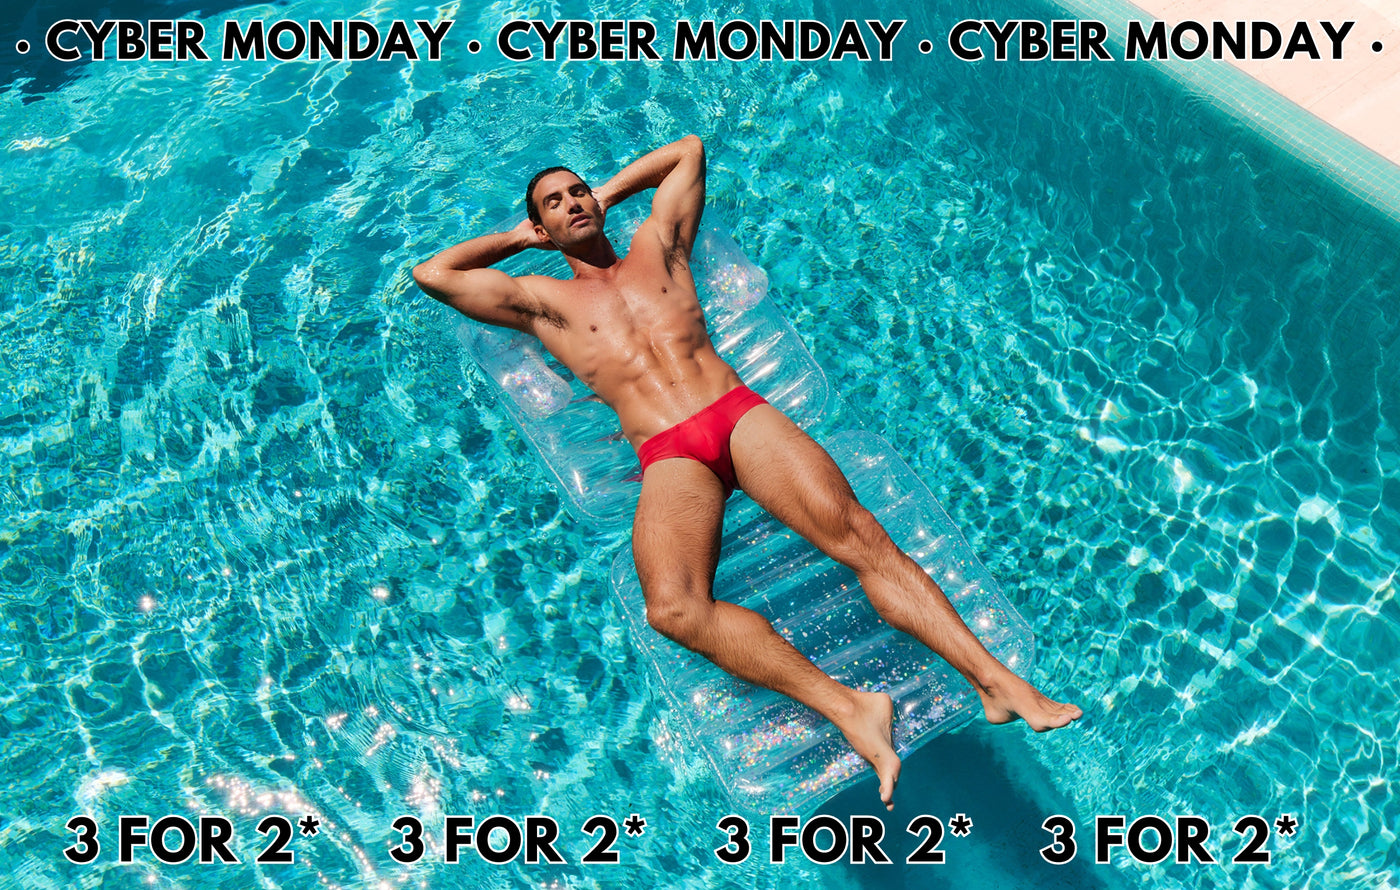 Cyber Monday Sale 2023 editorial image featuring Cocksox Men's swimwear CX79 Boy leg swim brief in Watermelon